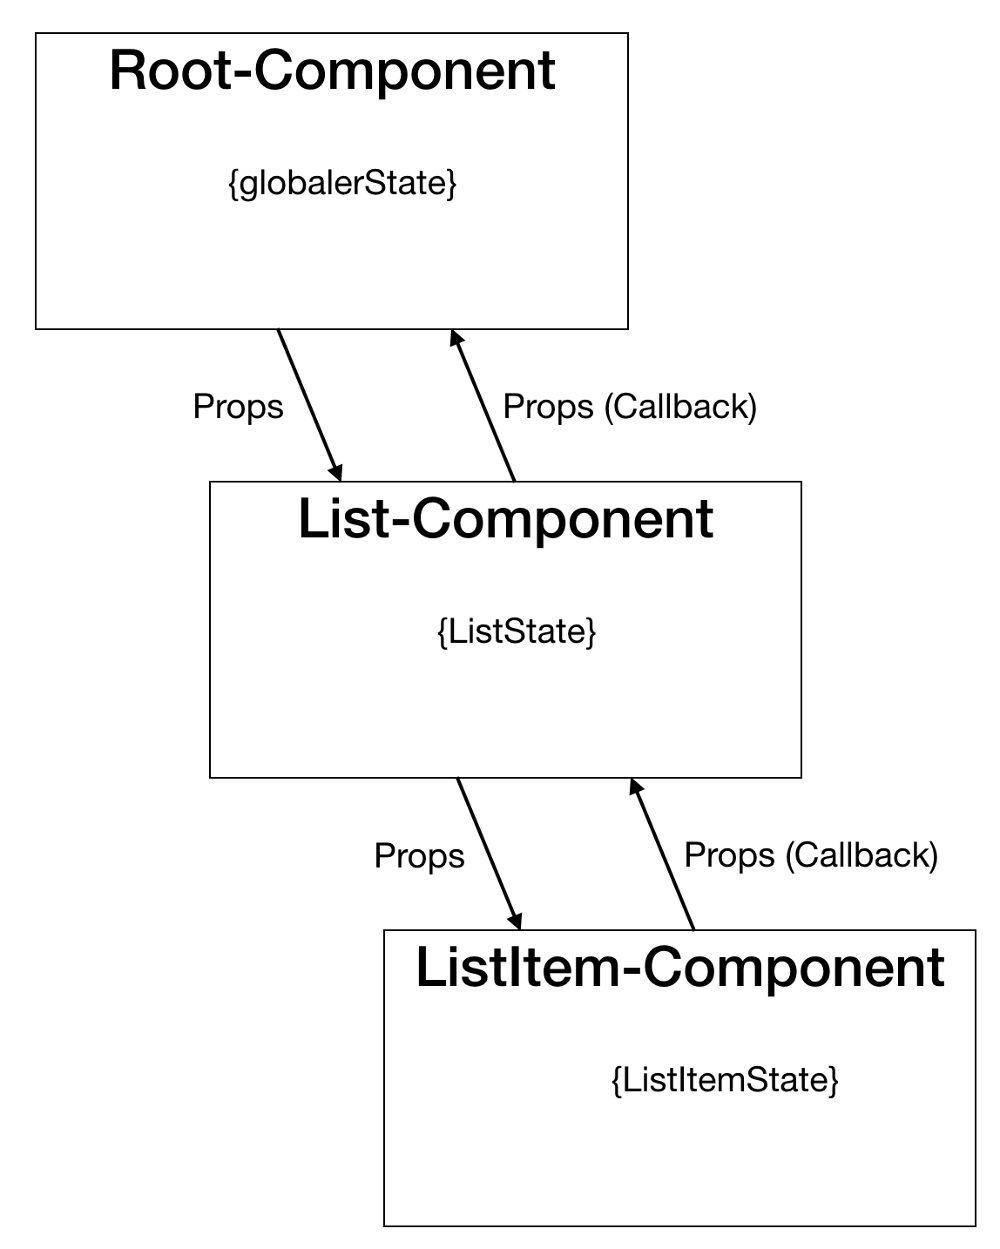 Abbildung - Komponentenhierarchie